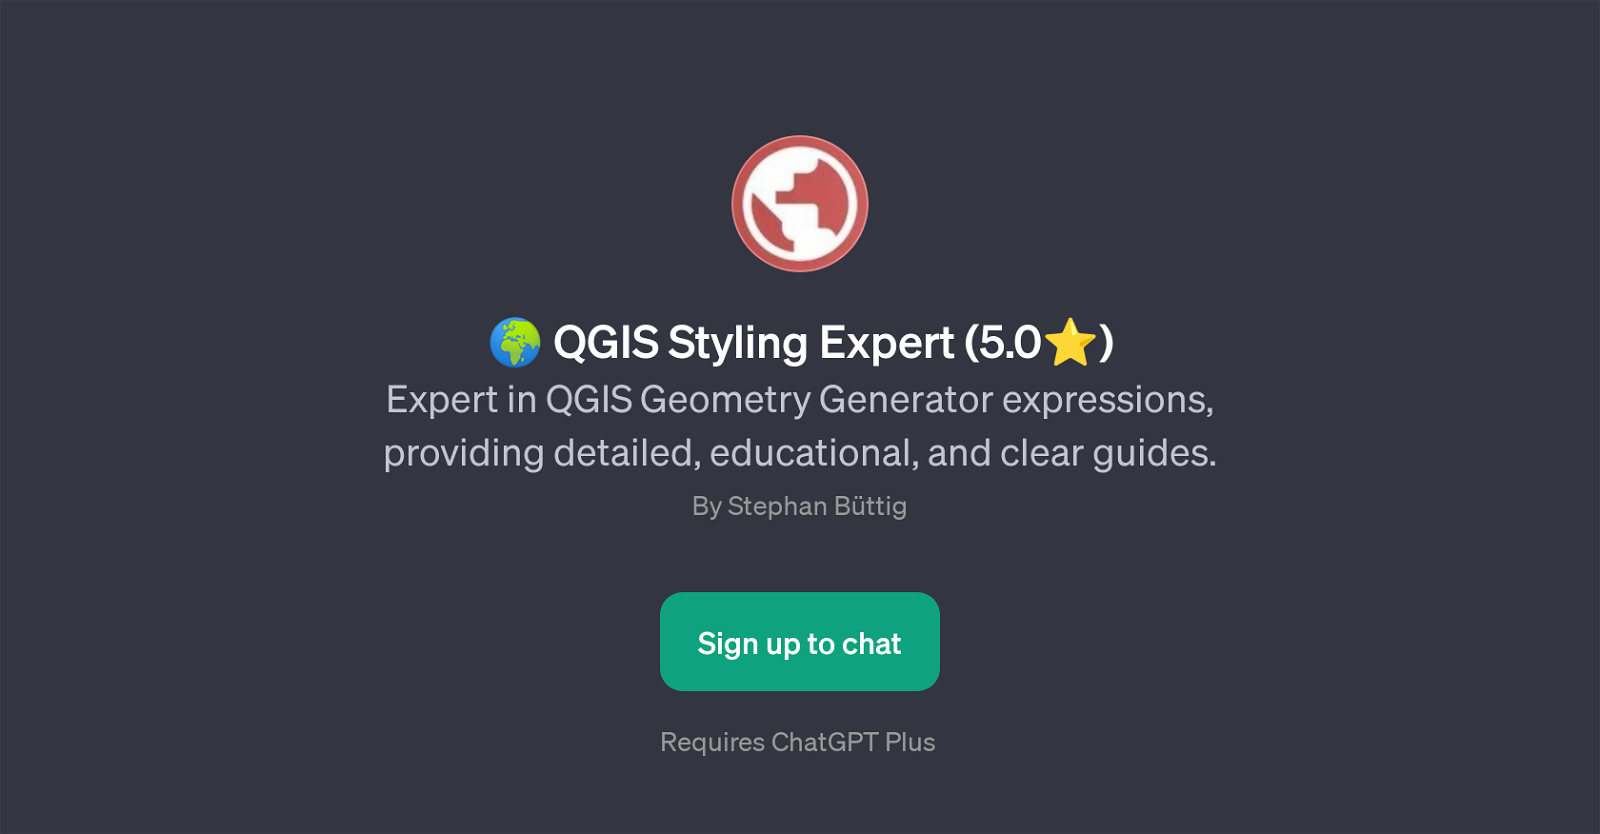 QGIS Styling Expert website